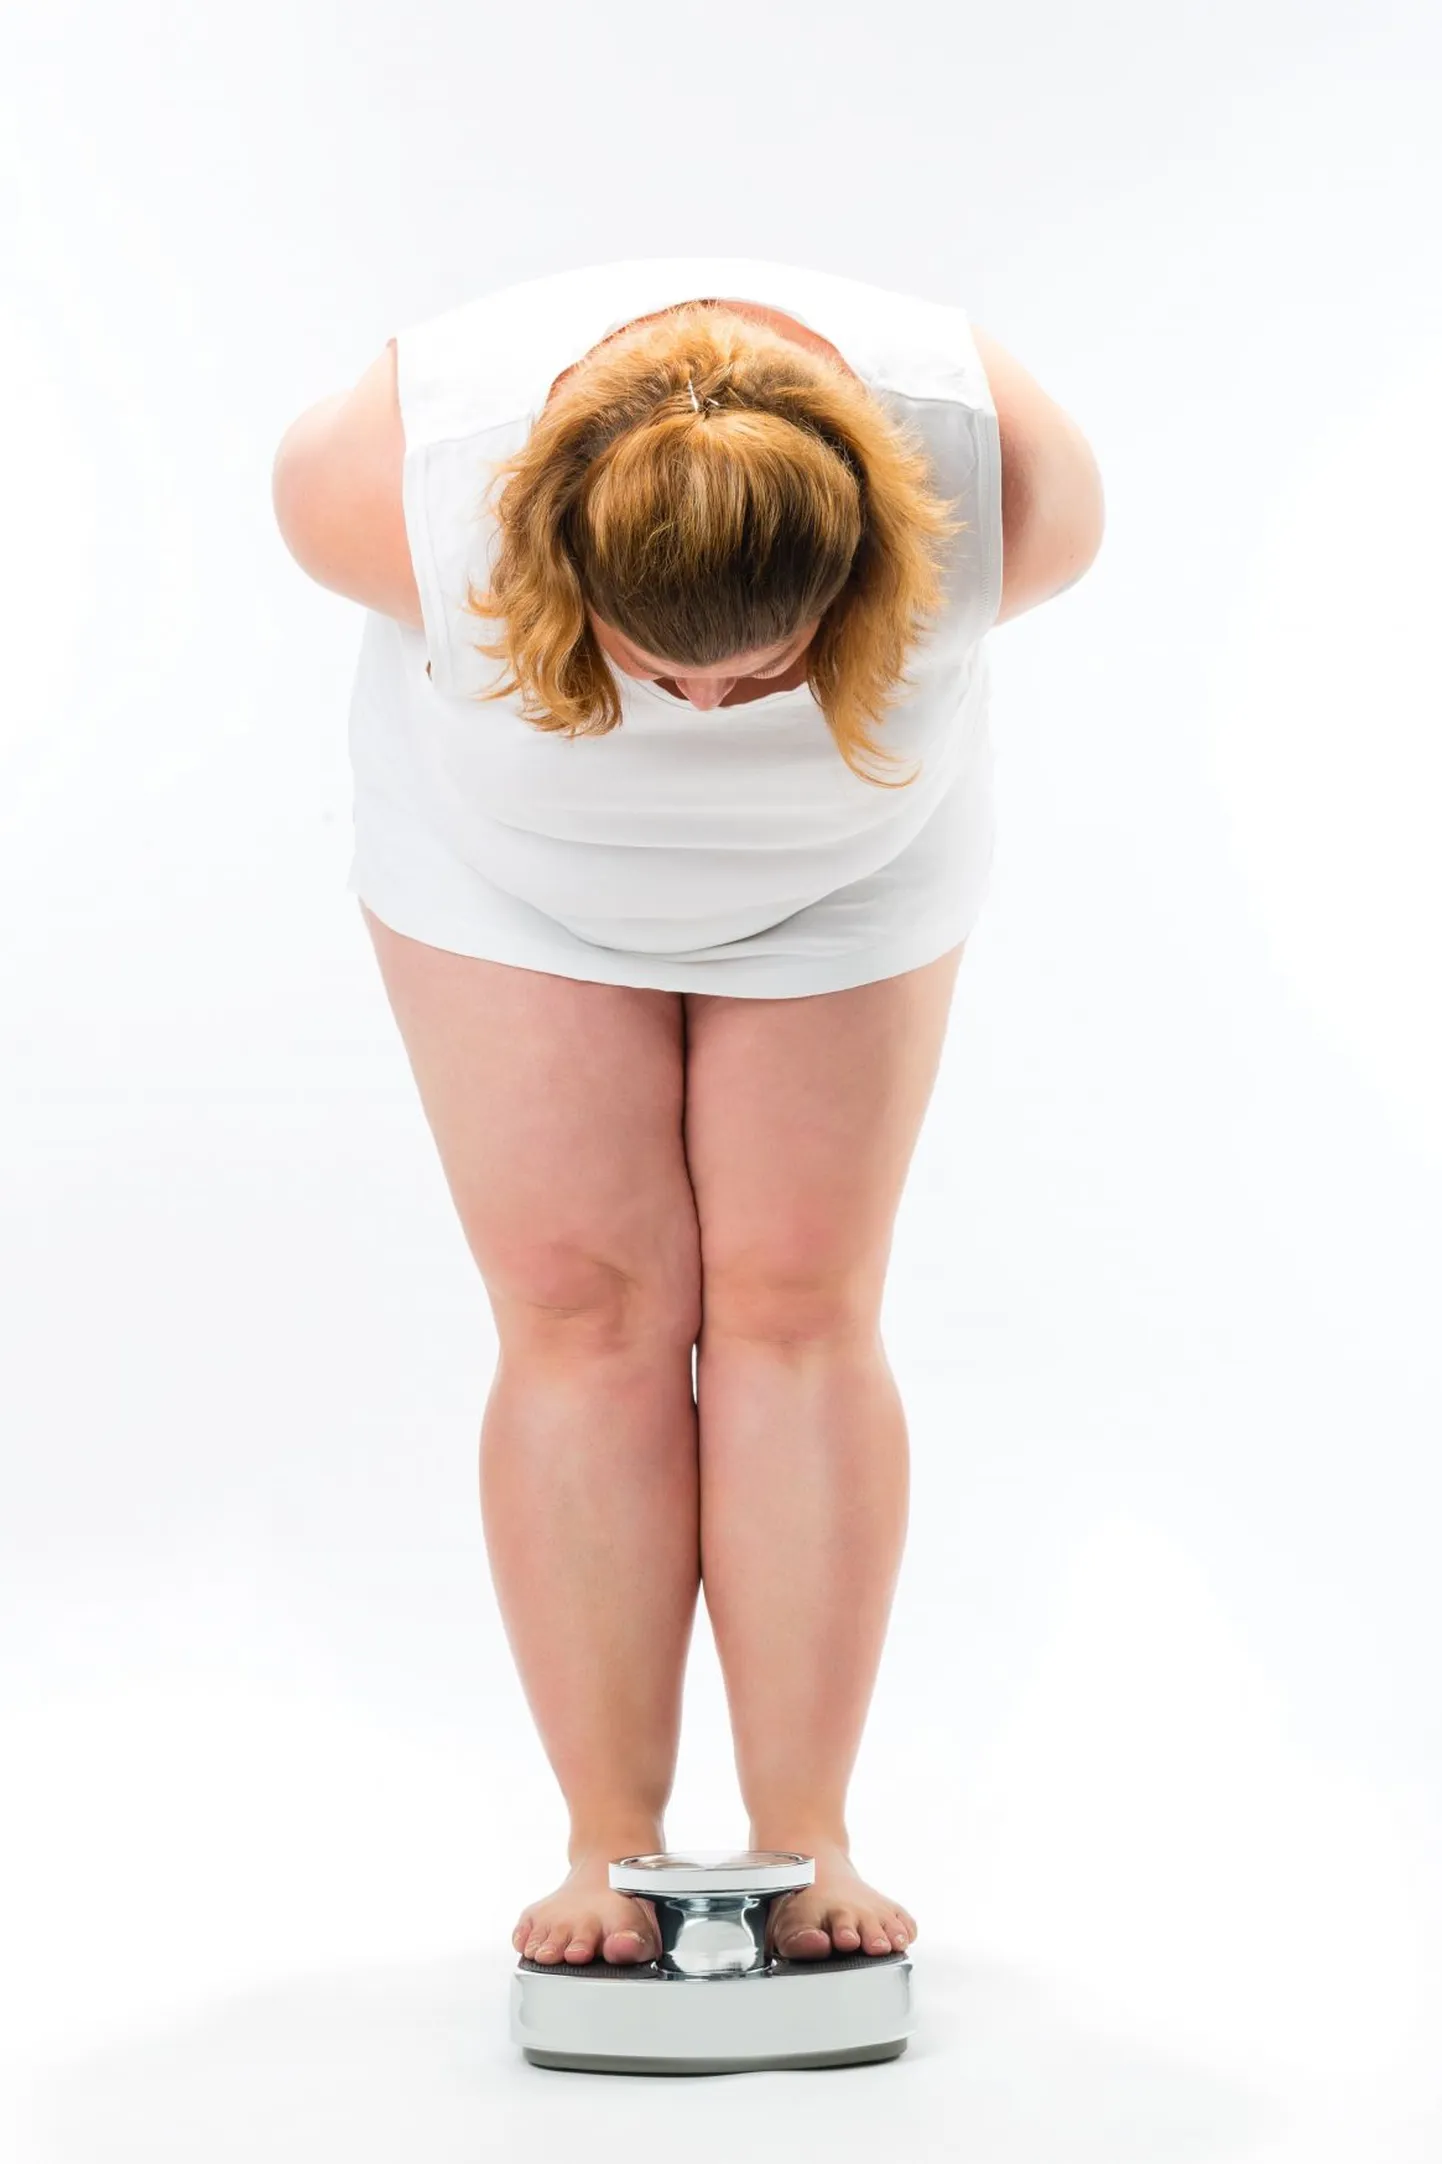 Rasvunud naistel on võrreldes normaalkaaluliste naistega kolm korda suurem risk viljatuse tekkeks.